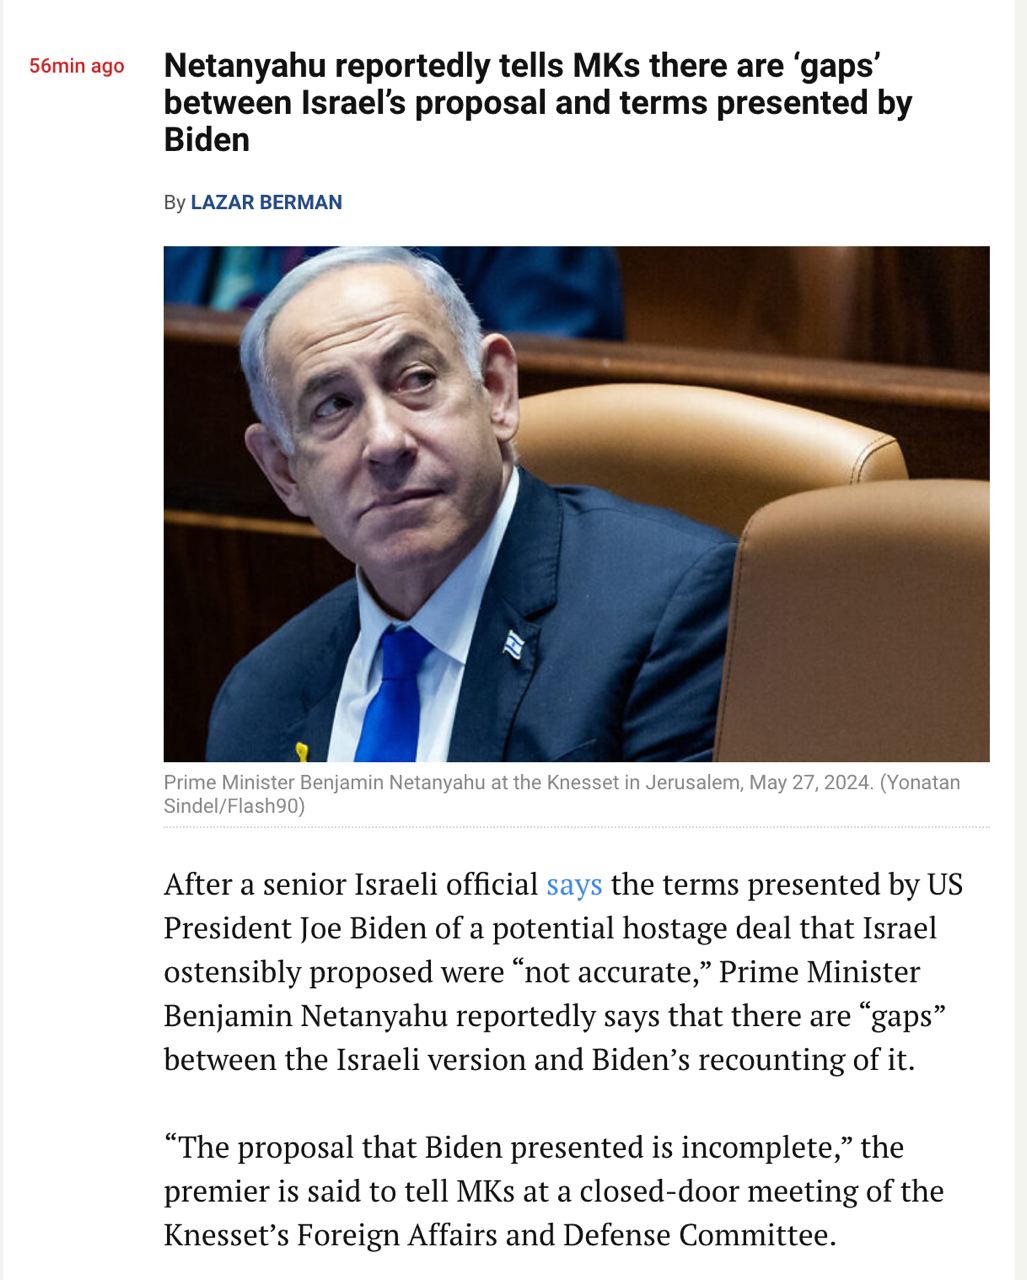 Снимок заголовка в The Times of Israel